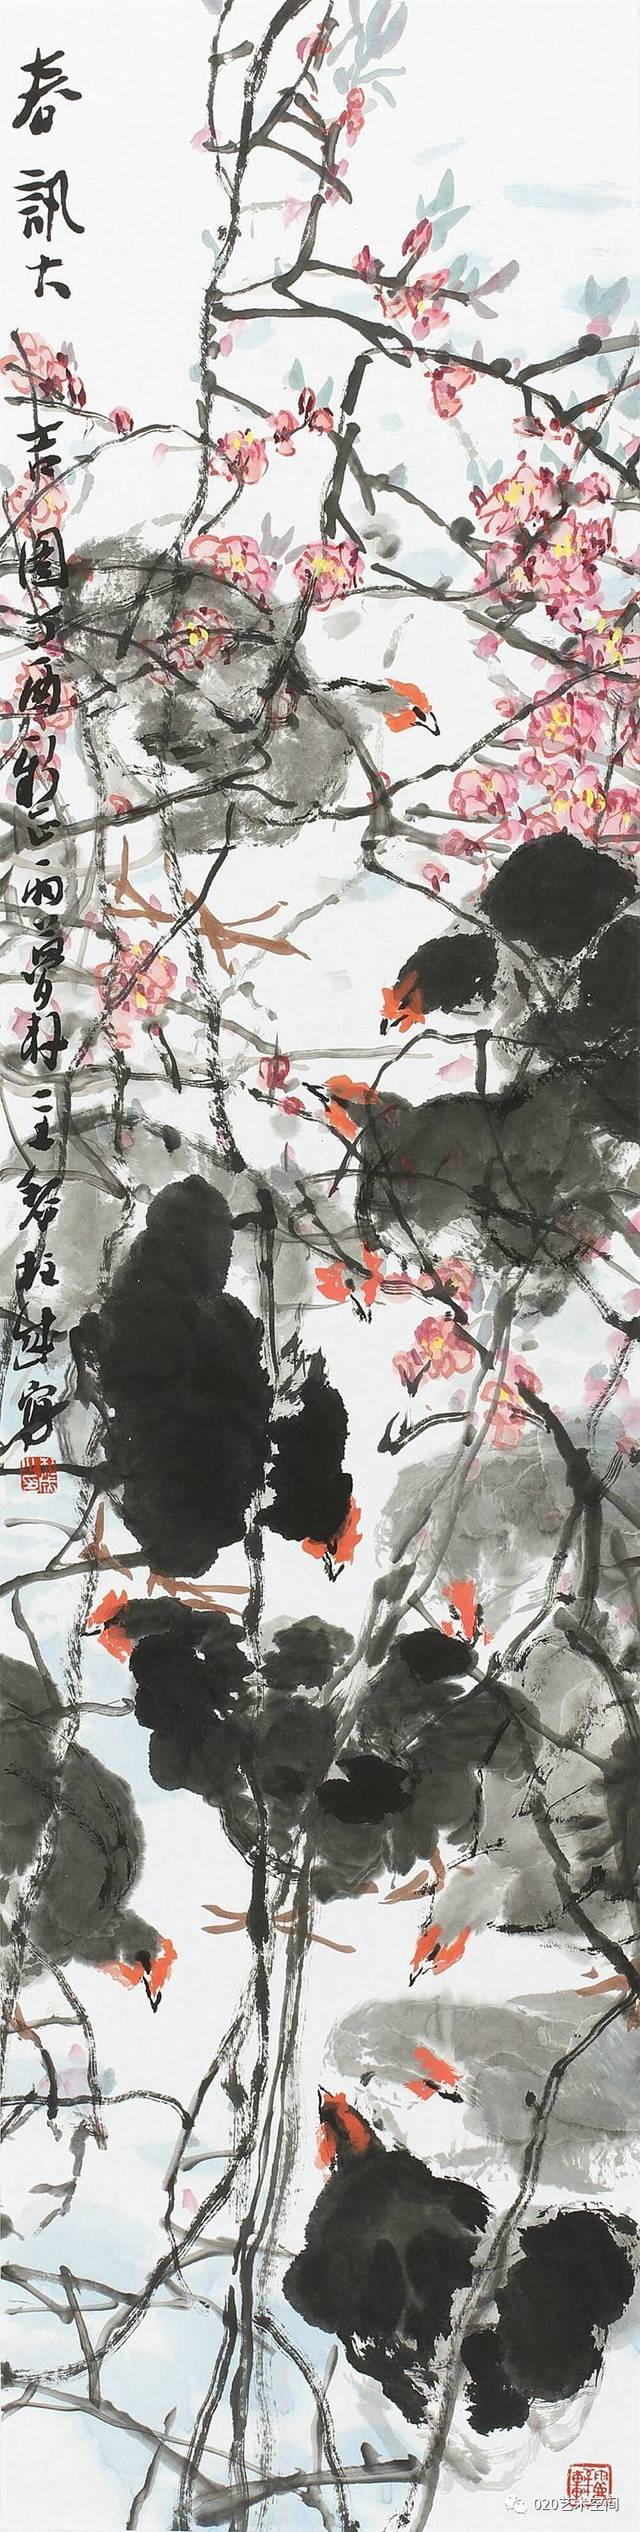 花之魂|苍浑气格黎柱成中国画作品展在潍坊开幕